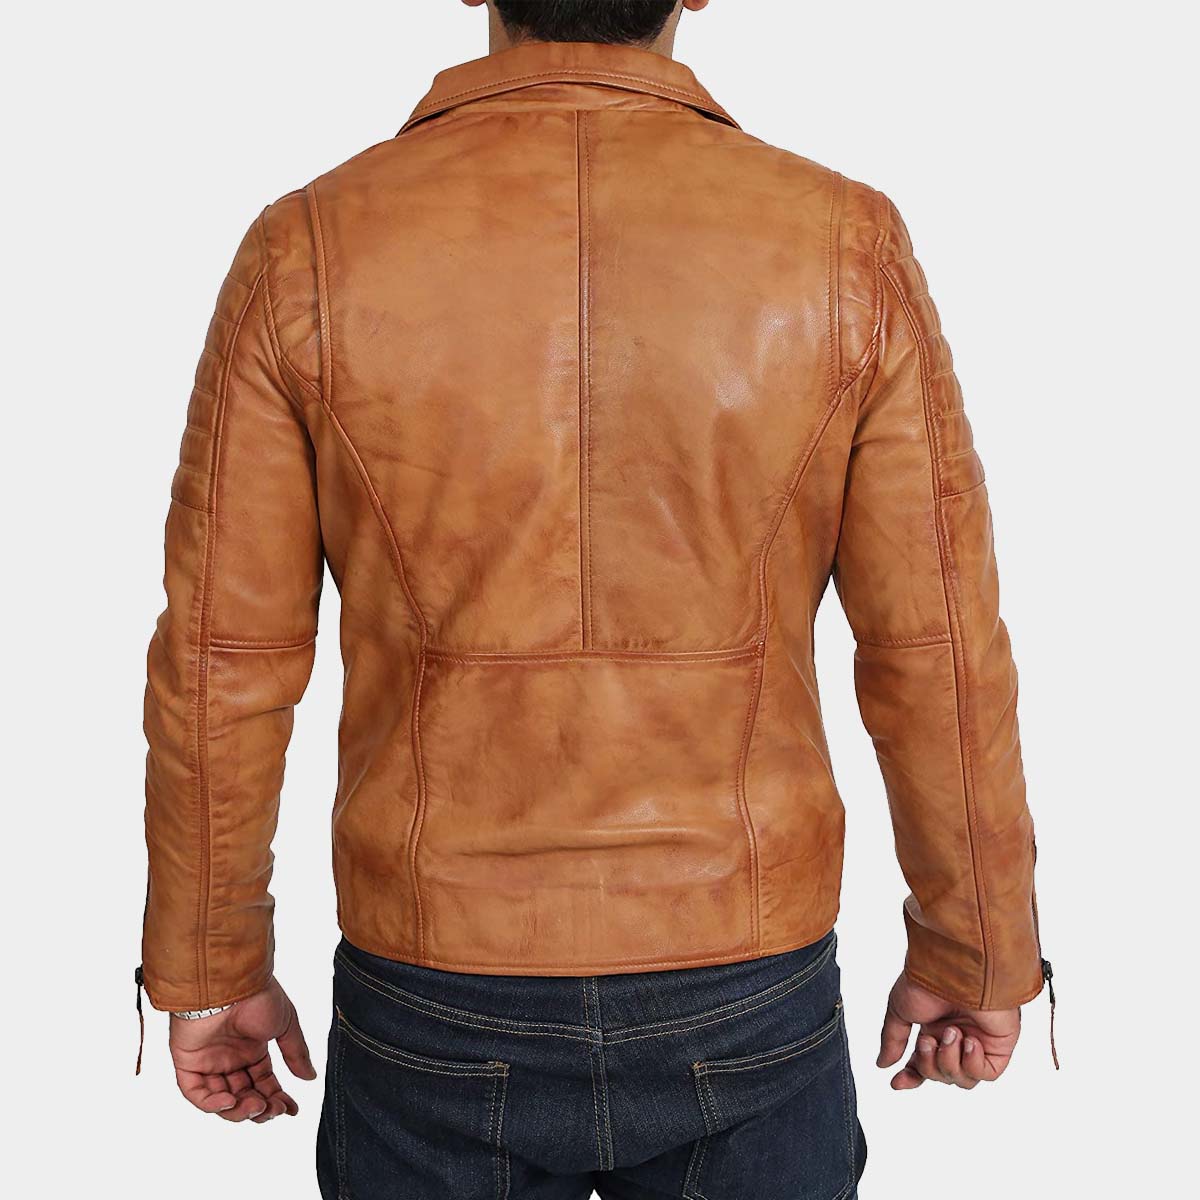 Men’s Biker Cafe Racer Distressed Brown Leather Jacket